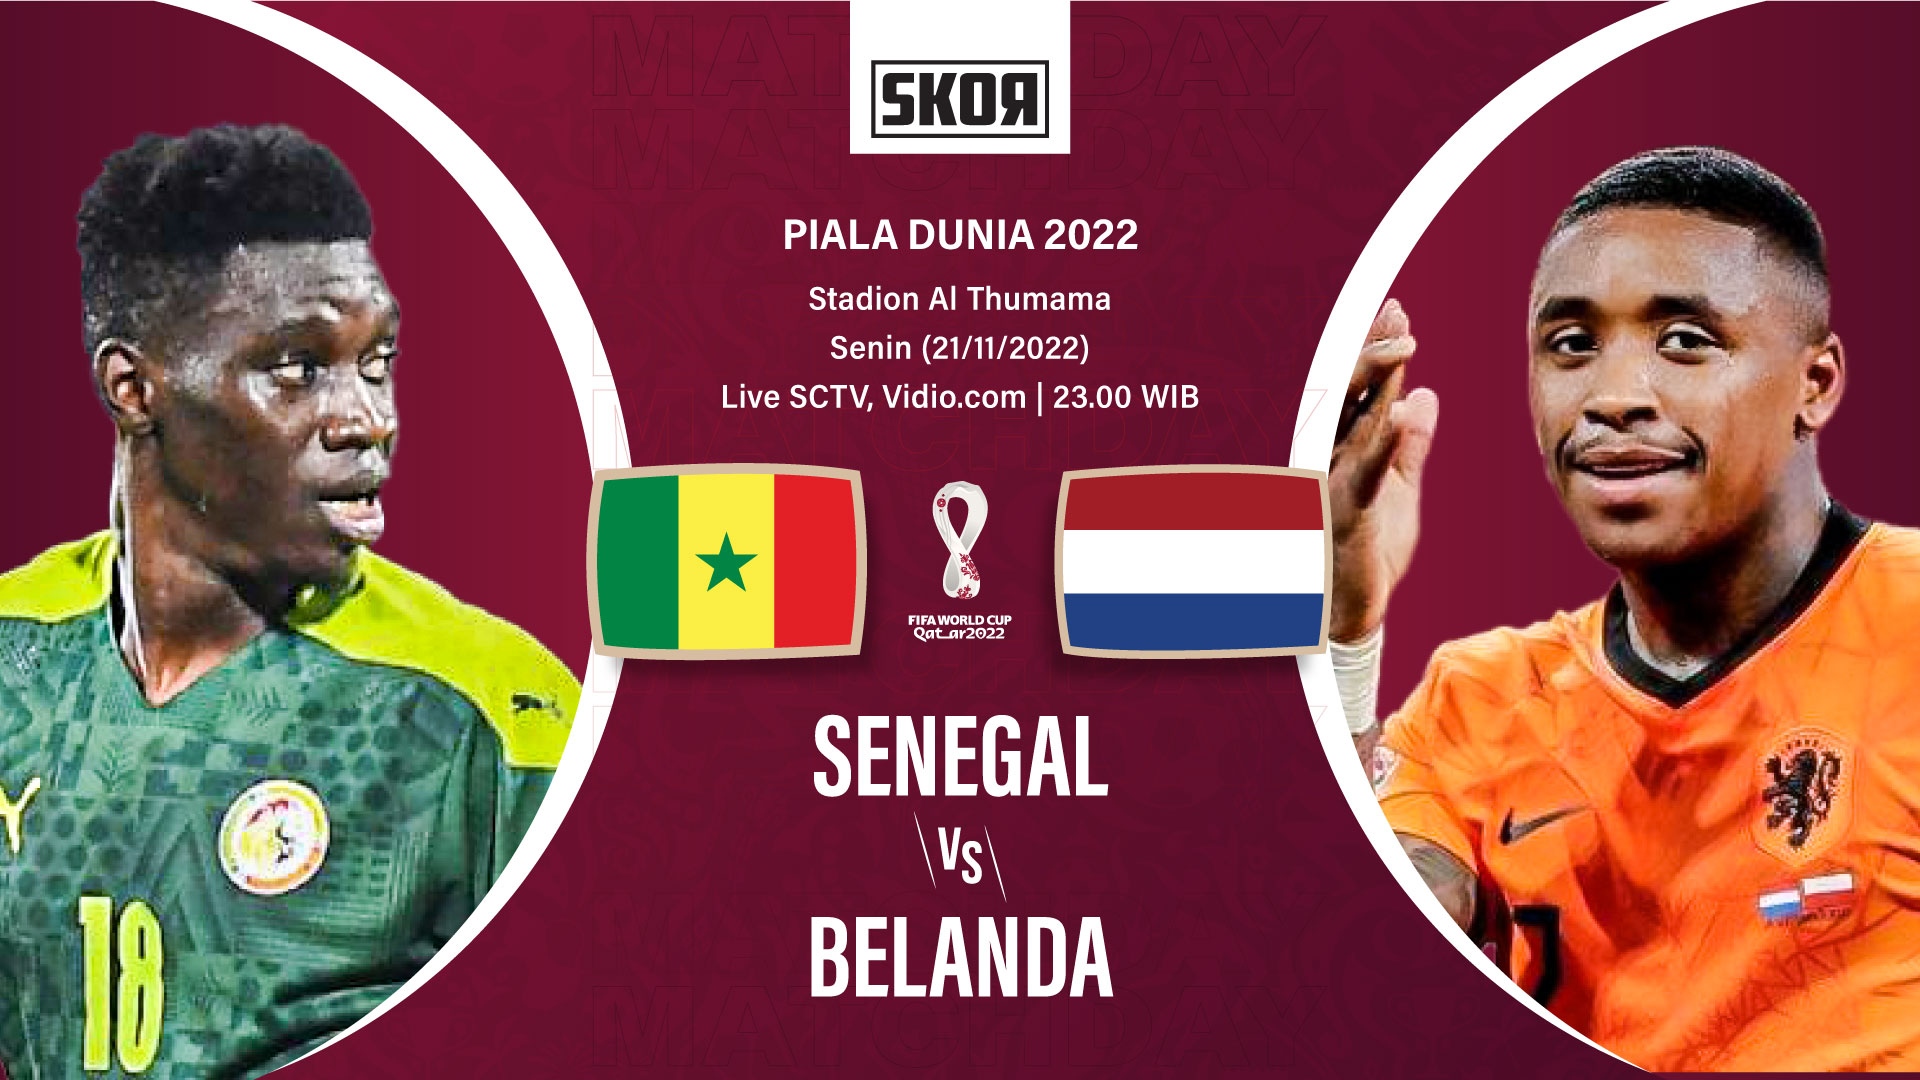 Piala Dunia 2022: 5 Fakta Menarik Usai Laga Senegal vs Belanda